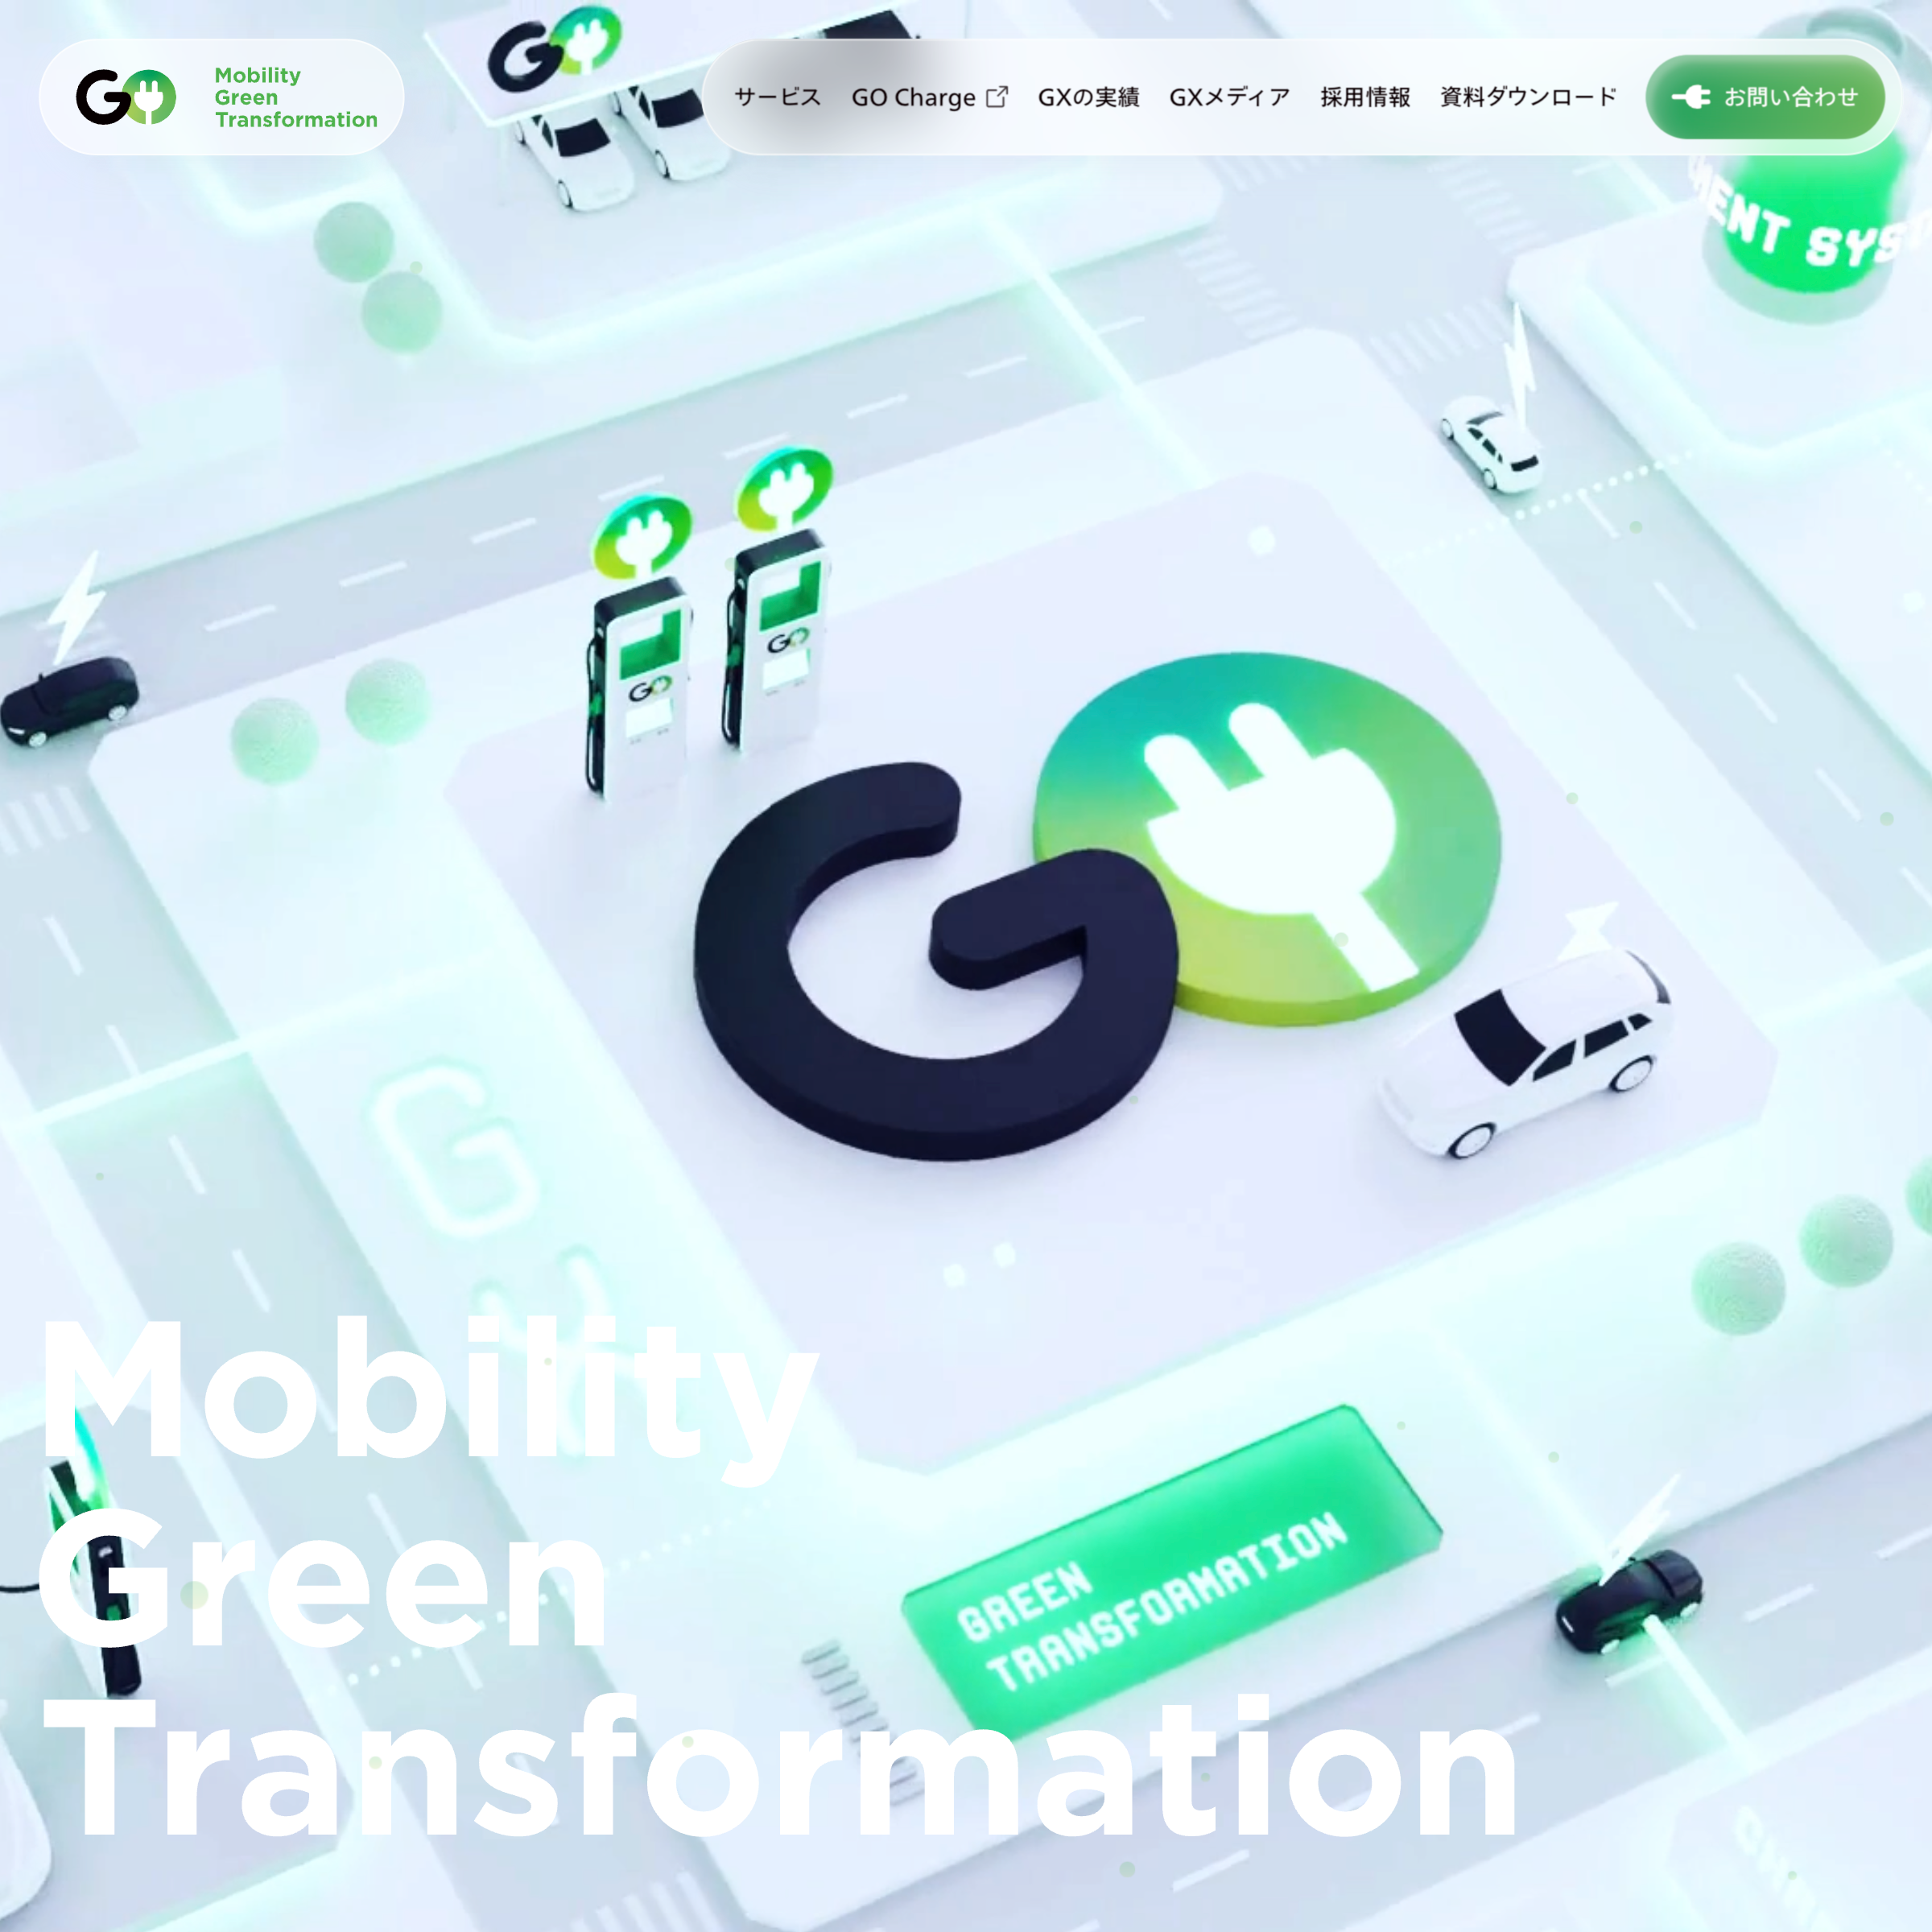 GO株式会社の脱炭素サービスGX（グリーントランスフォーメーション）のパソコンで見たファーストビューの画像